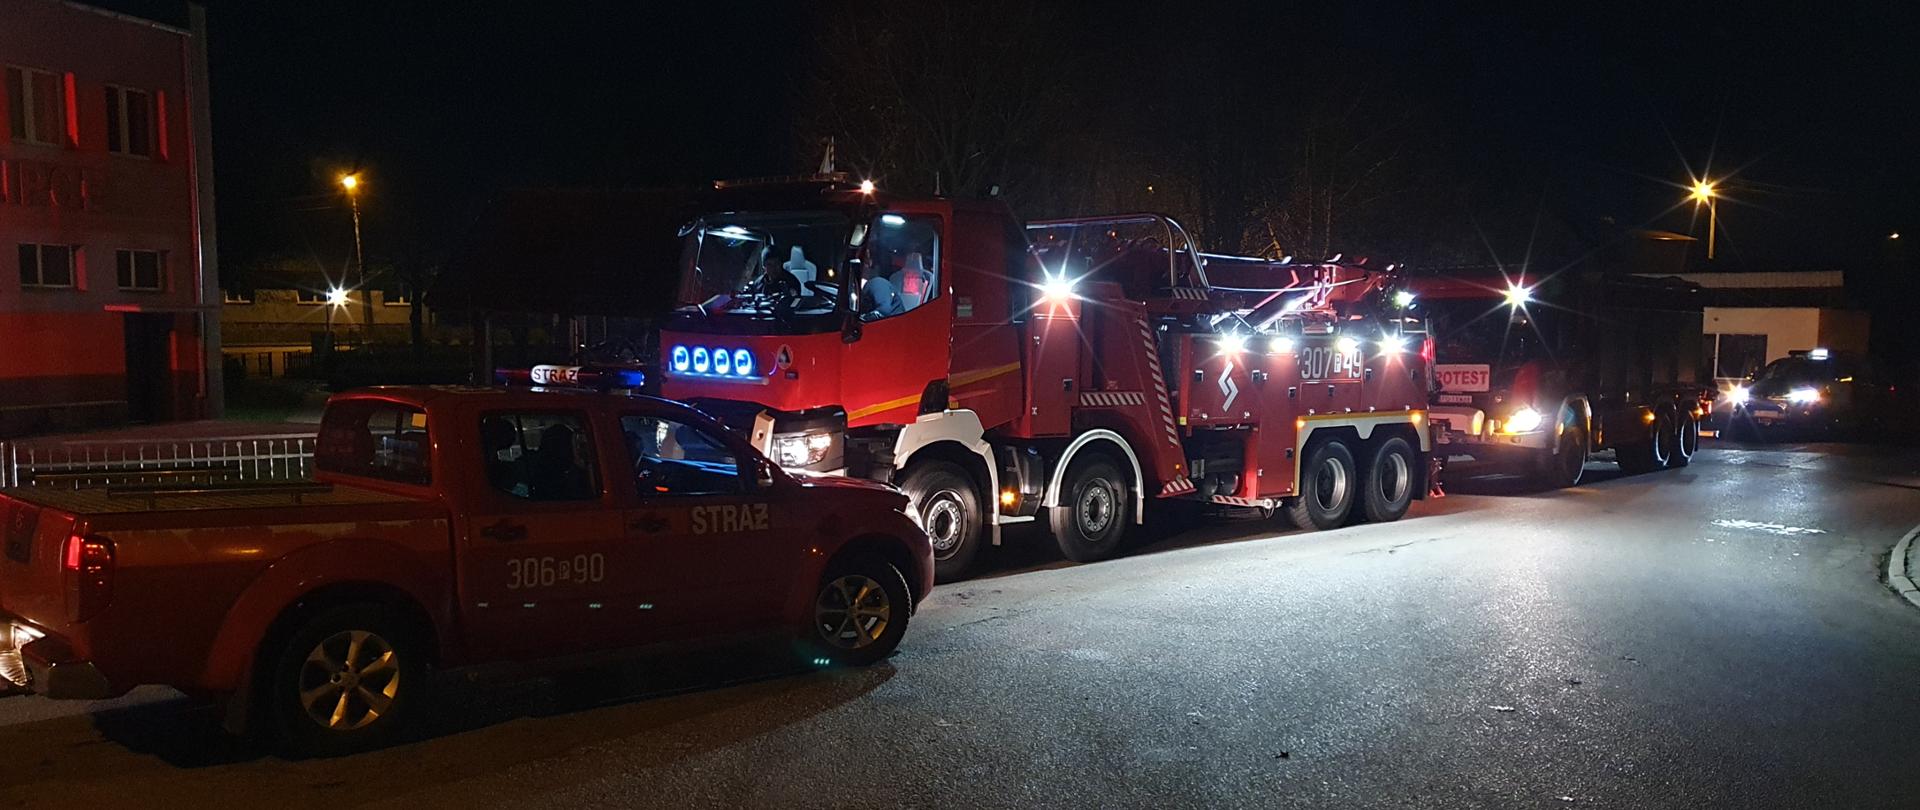 Na zdjęciu widoczne są czerwone samochody straży pożarnej w punkcie przyjęcia sił i środków